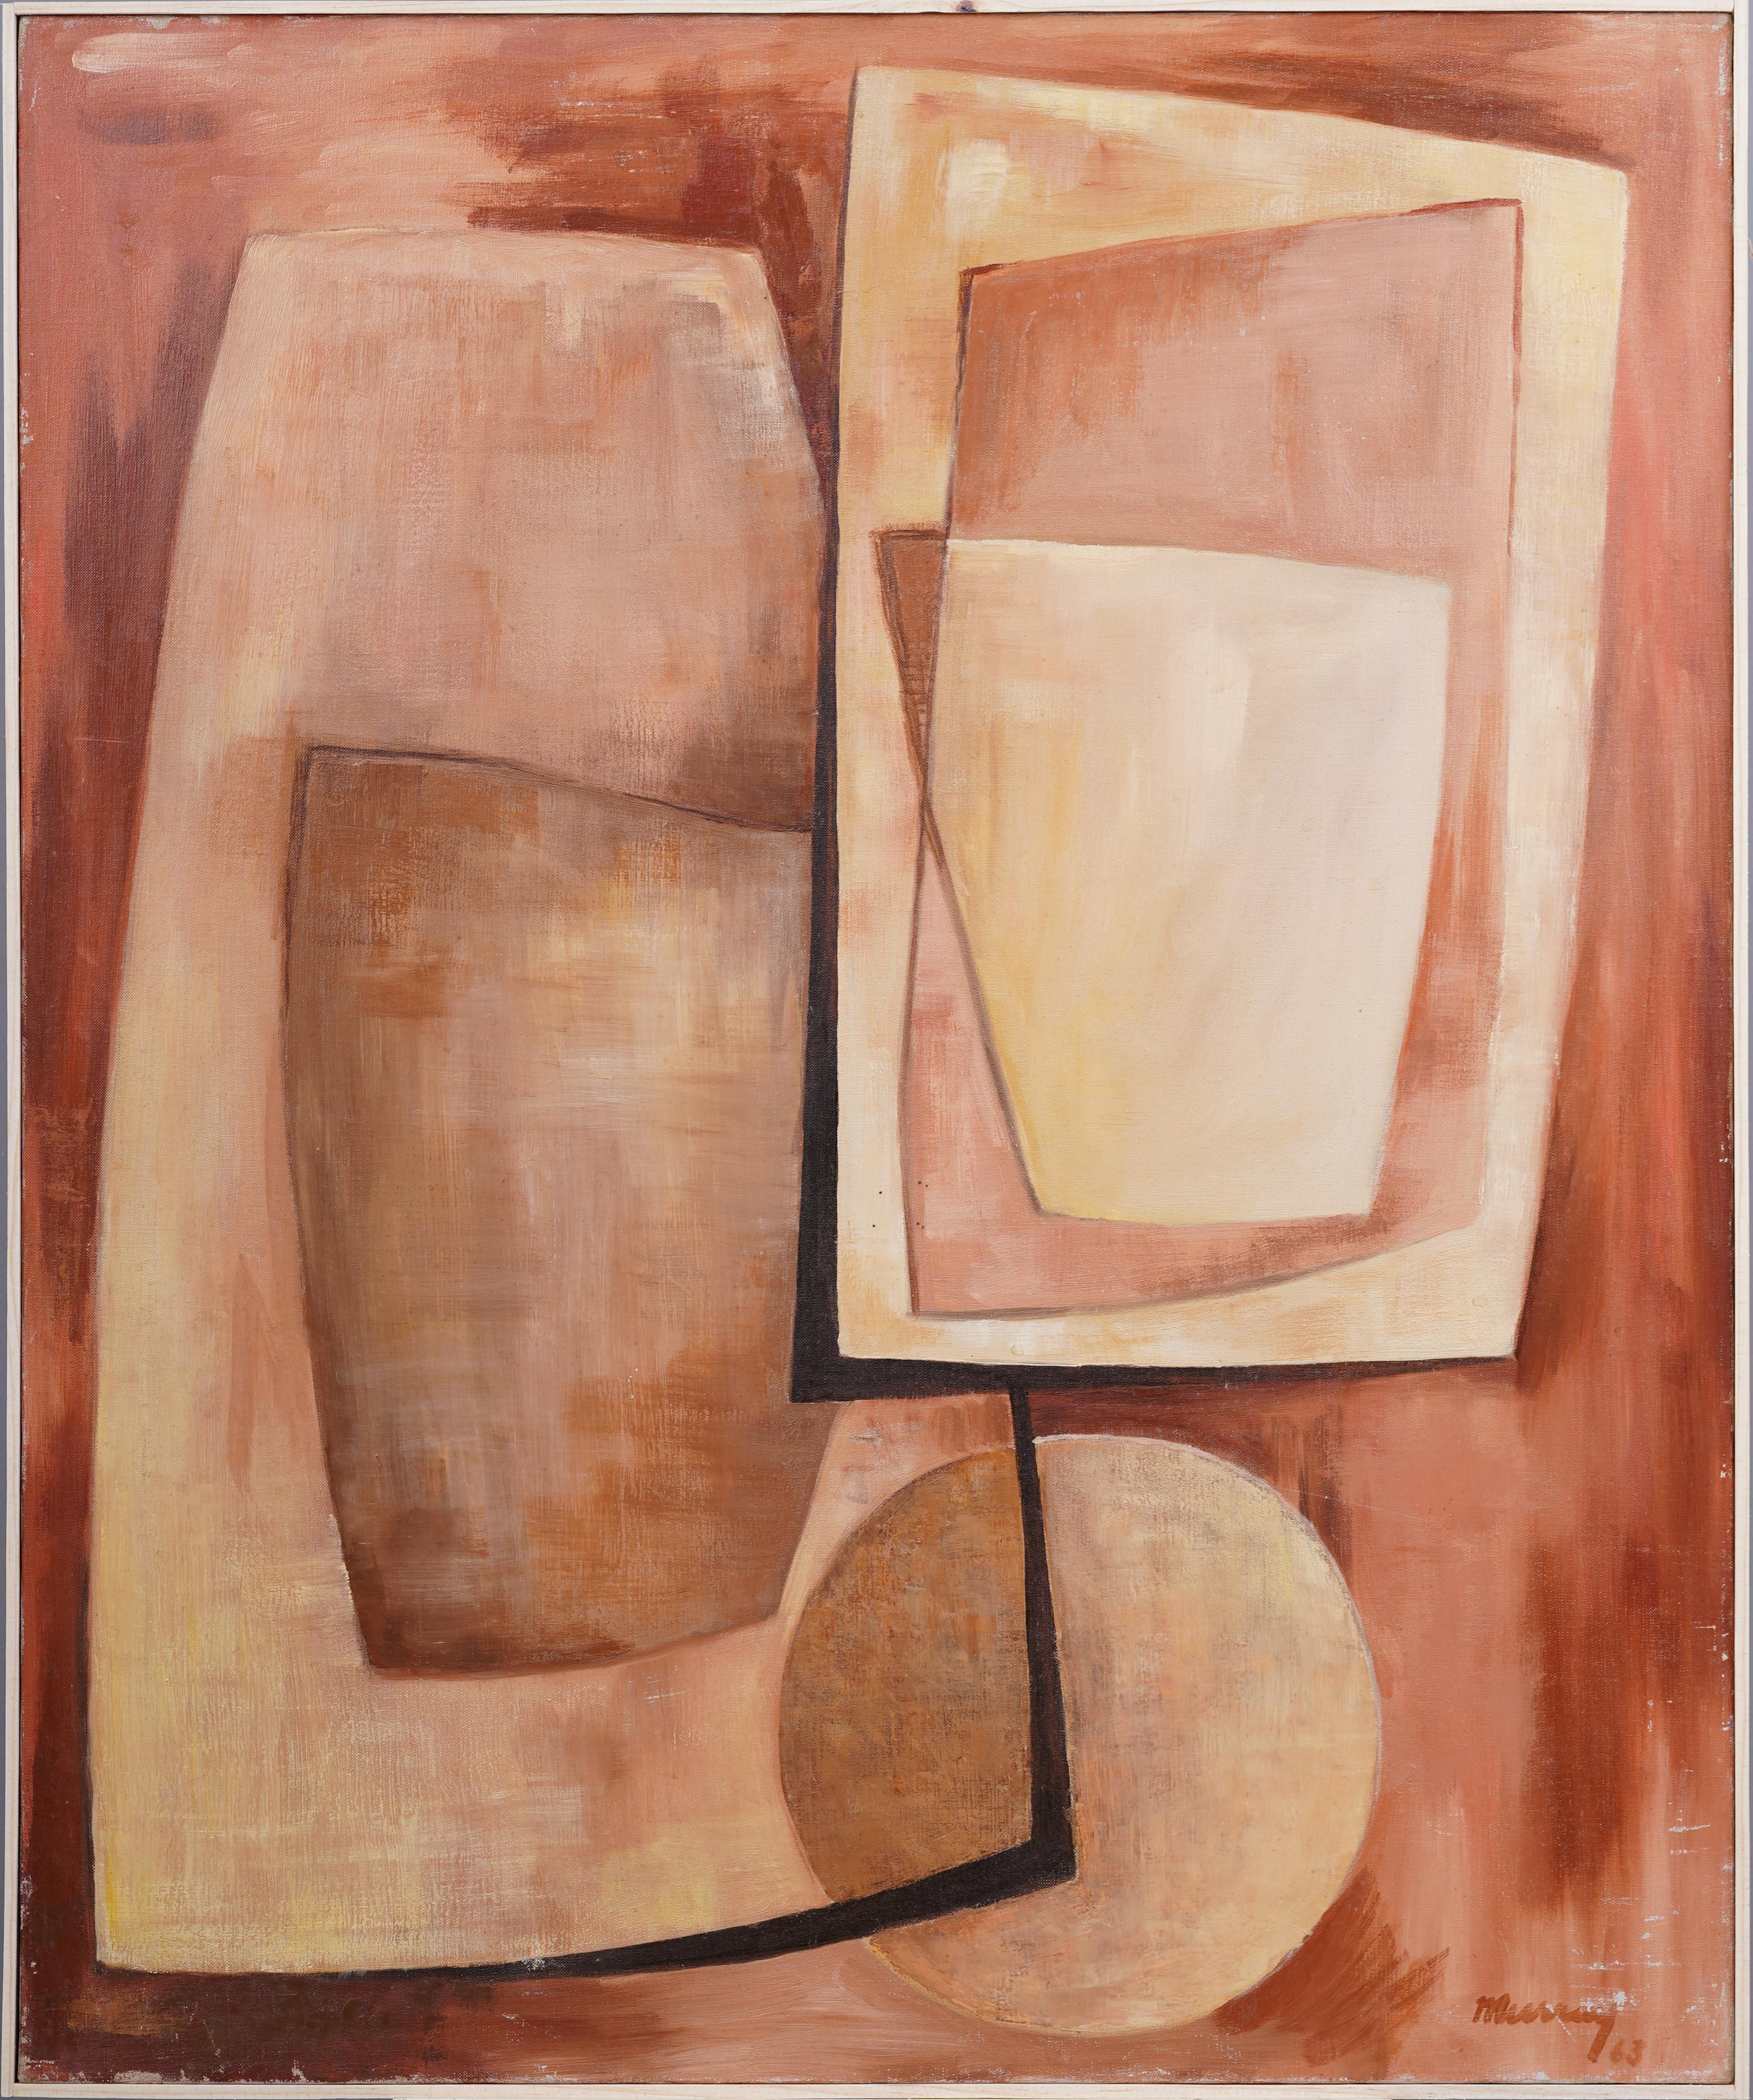 Ancienne peinture à l'huile moderniste américaine cubiste abstraite encadrée, signée - Painting de Unknown